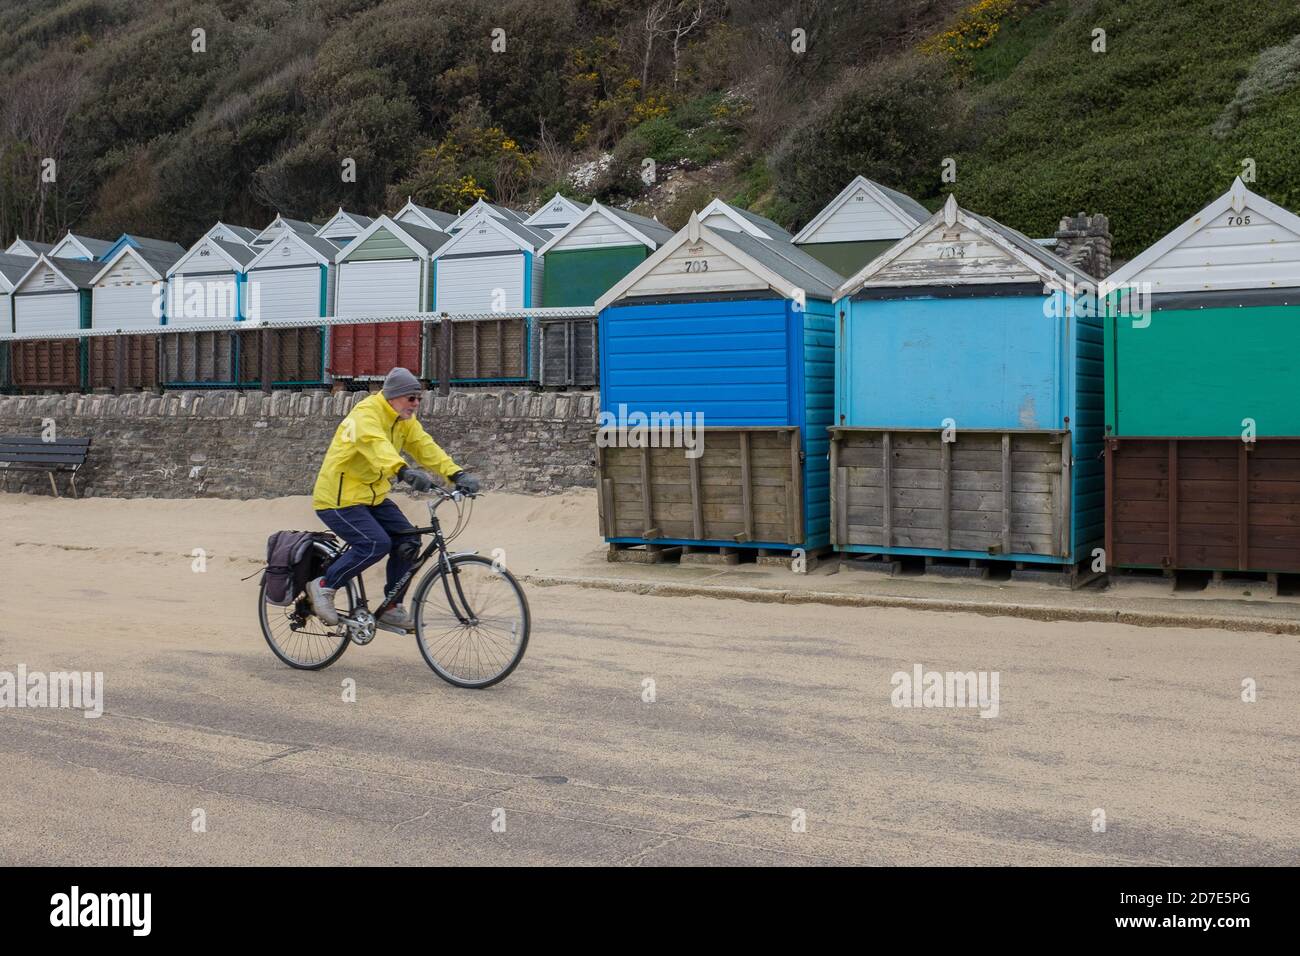 Un cycliste de couleur jaune vif, sous un manteau coupe-vent, passe devant des rangées de cabanes de plage le long de la promenade couverte de sable soufflé sur la plage de Boscombe à Bournemouth le jour de février. 10 février 2015. Photo: Neil Turner Banque D'Images